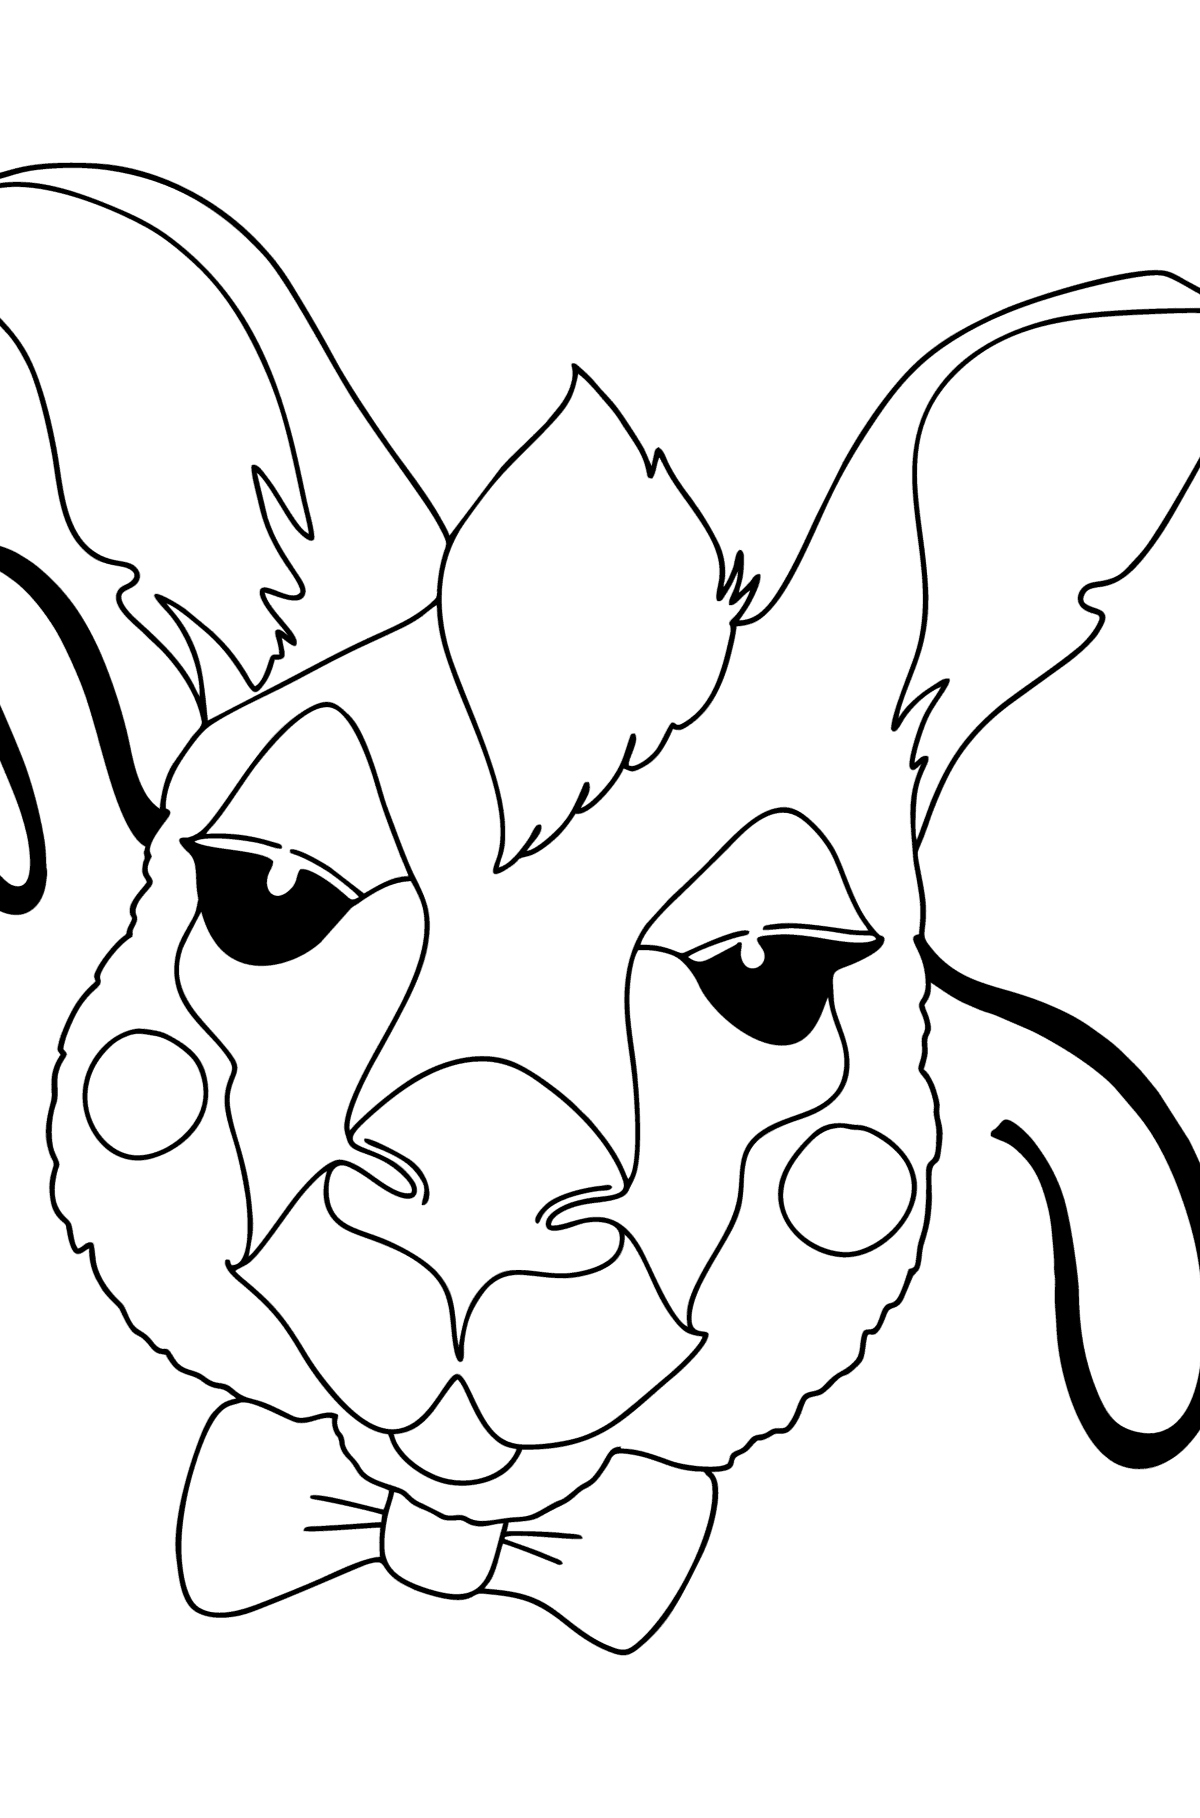 Tegning til farvning kænguru maske - Tegninger til farvelægning for børn